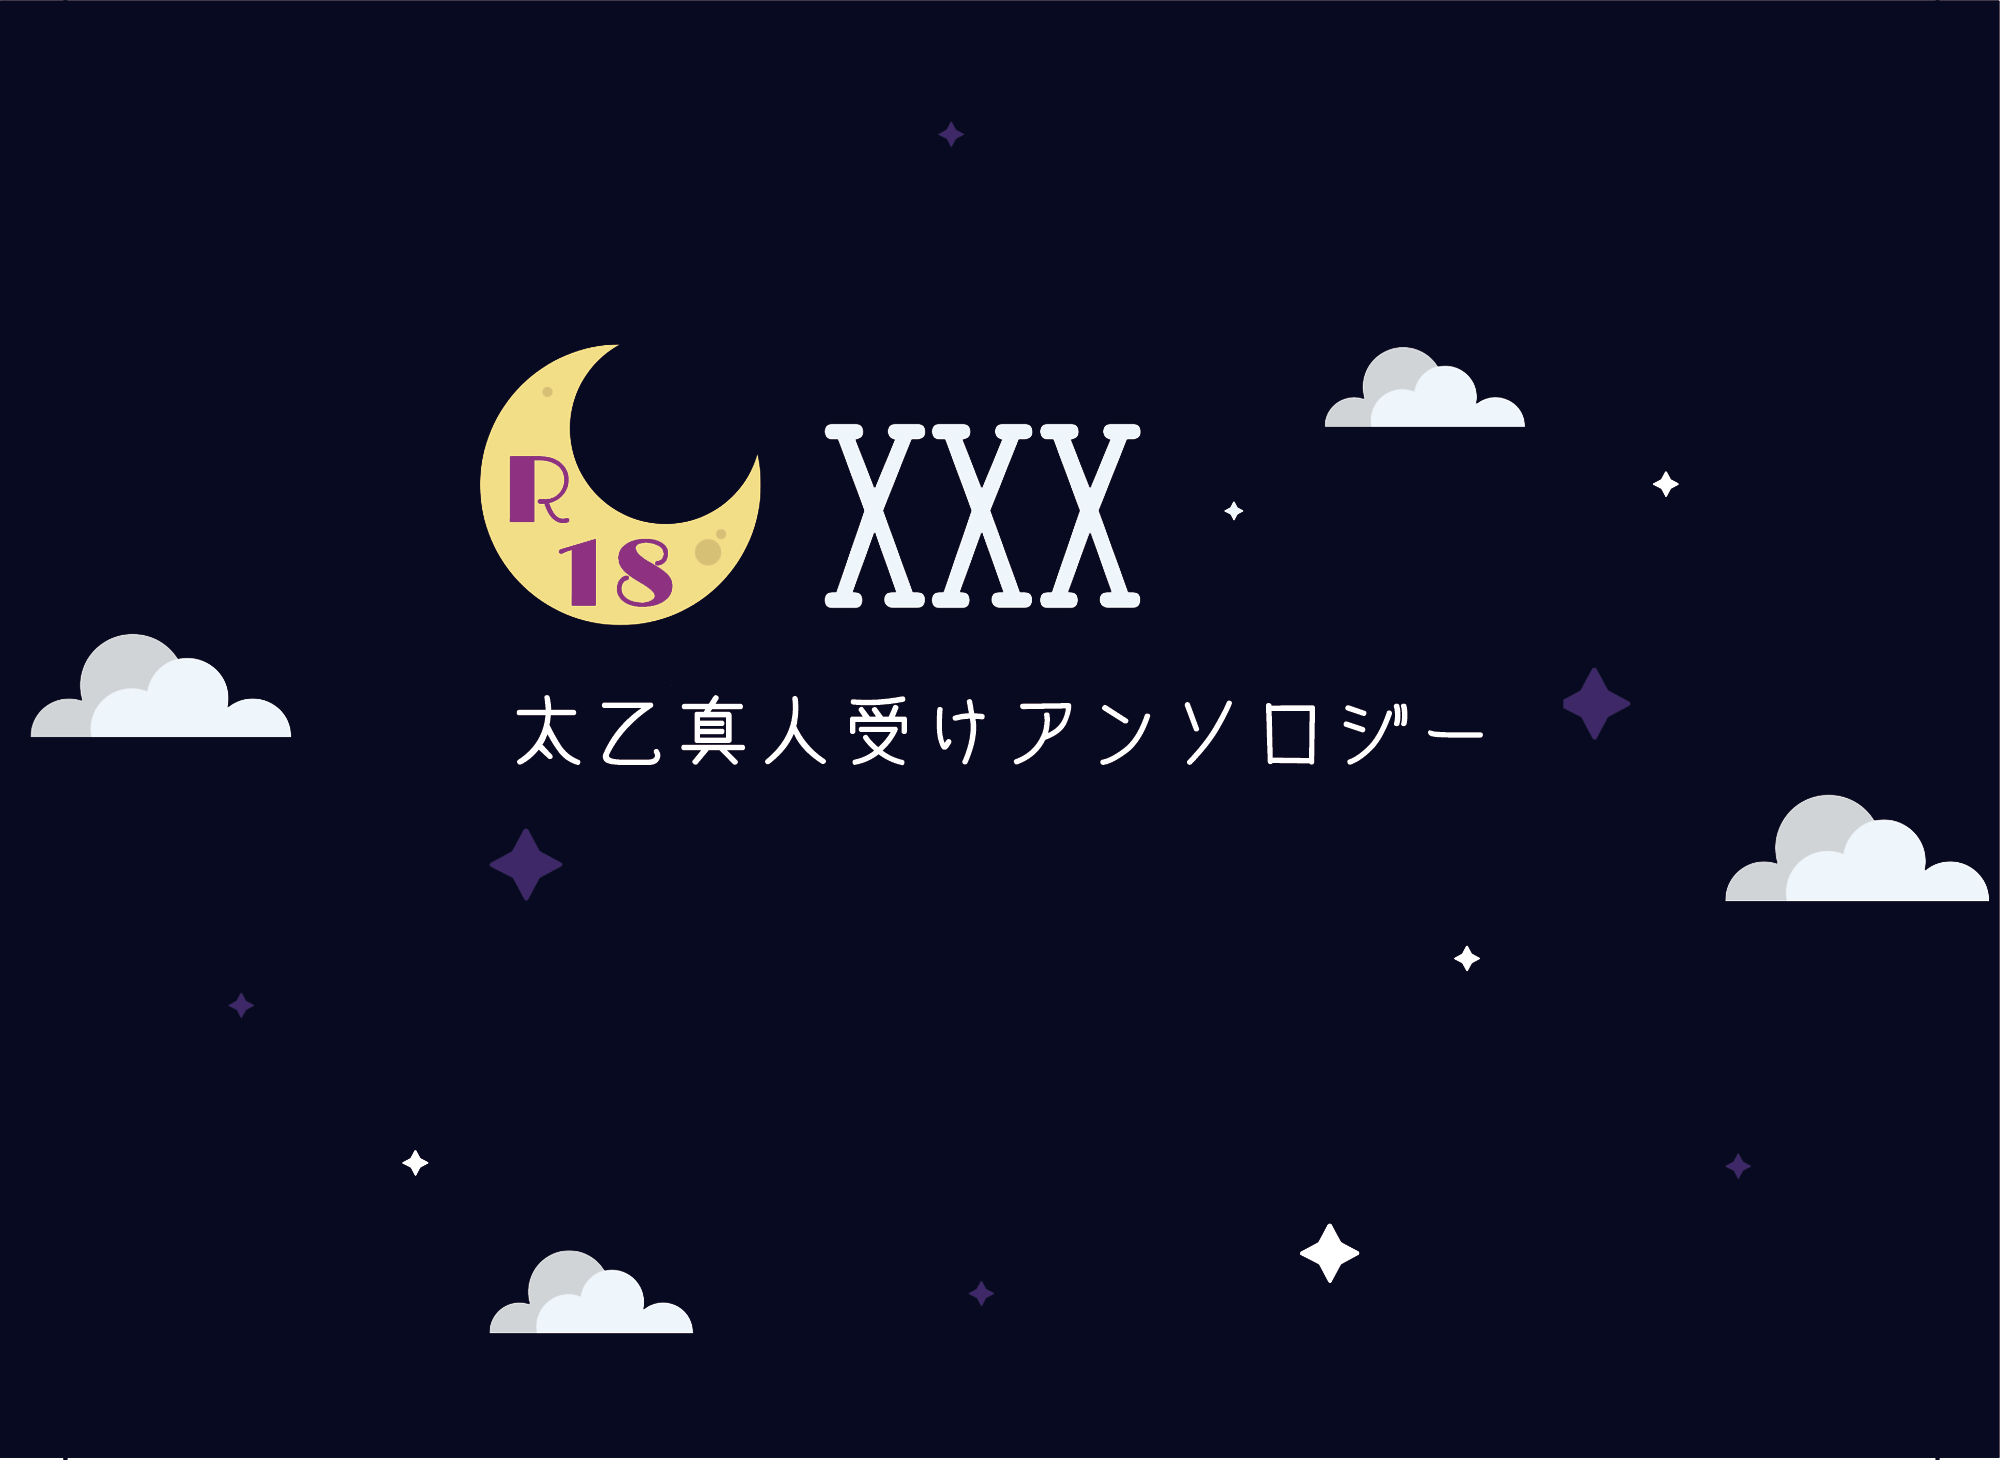 18禁太乙真人受けアンソロジー「XXX」